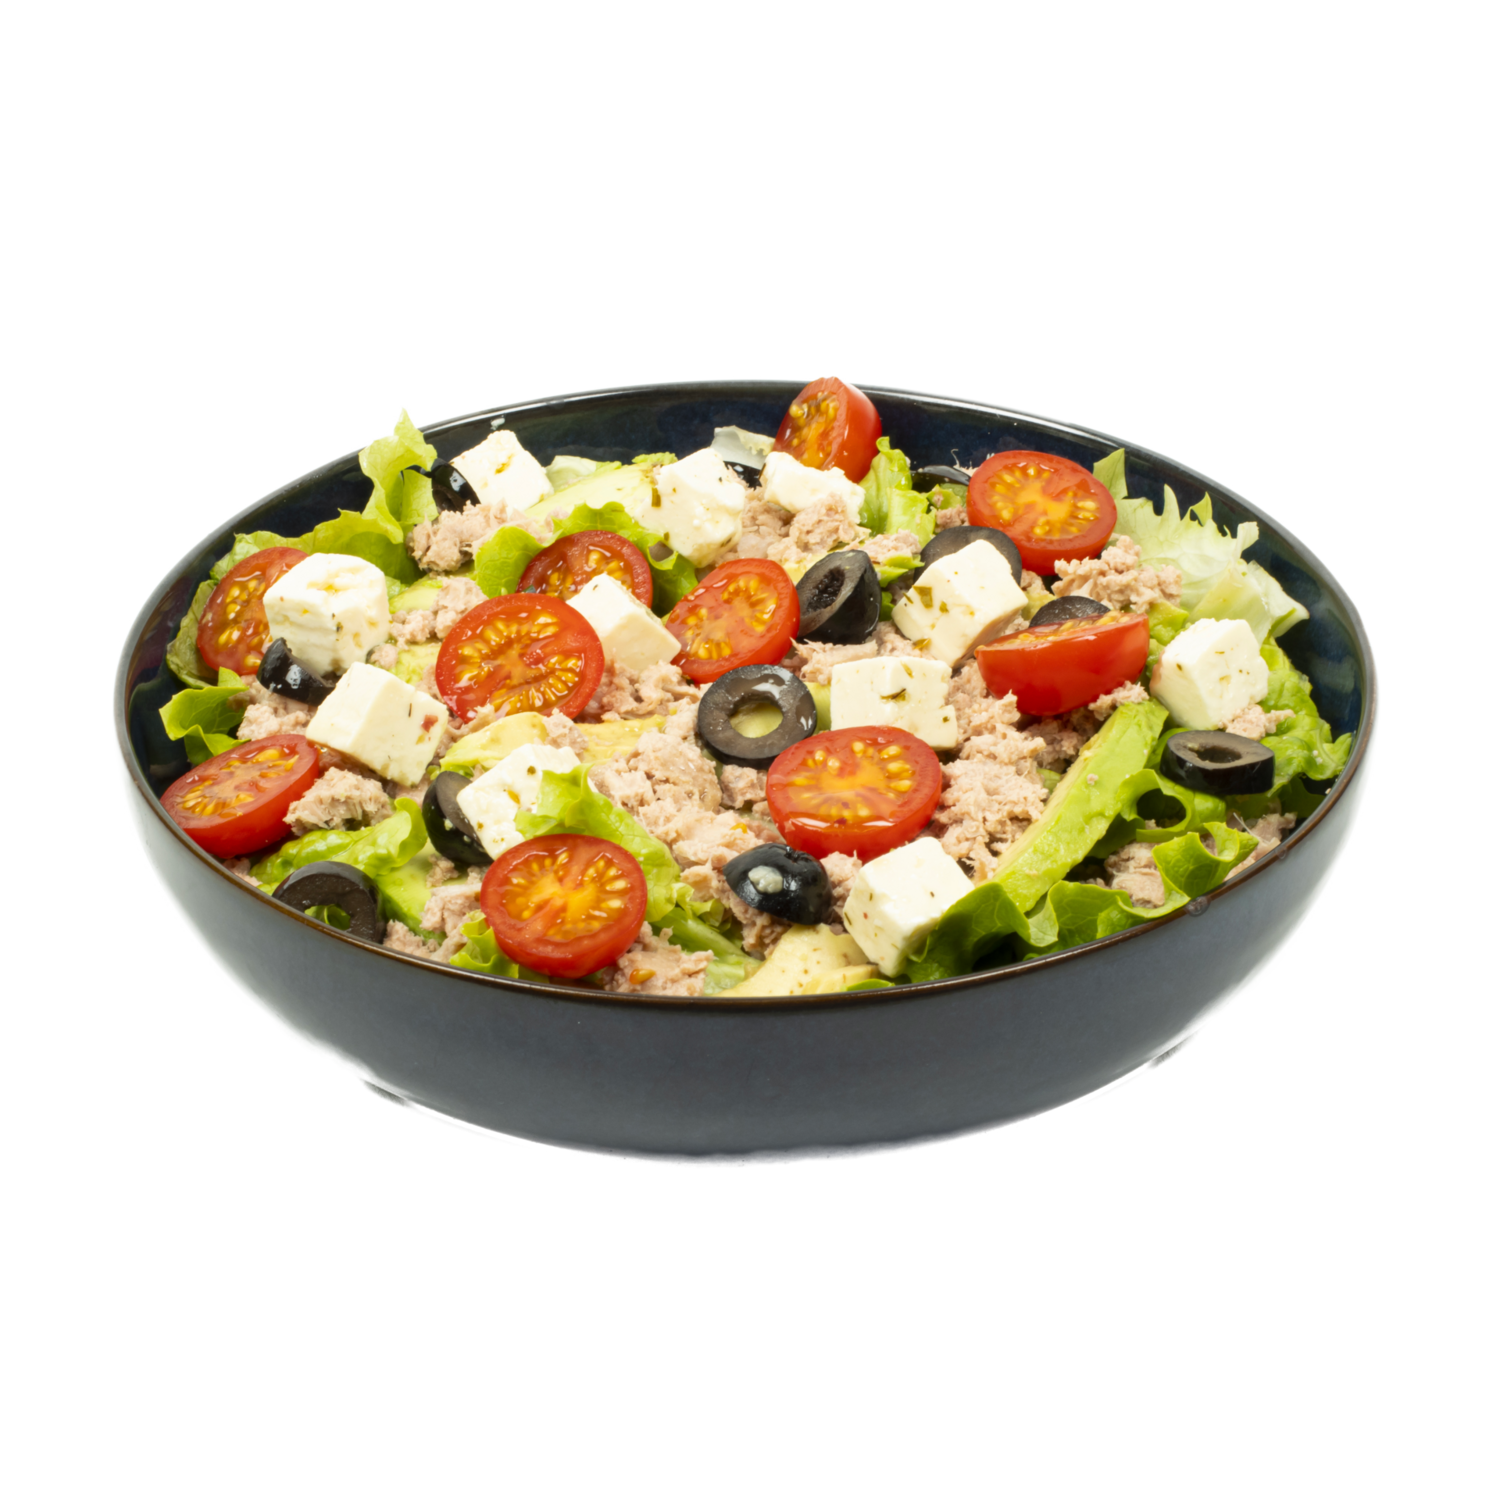 Salade composée